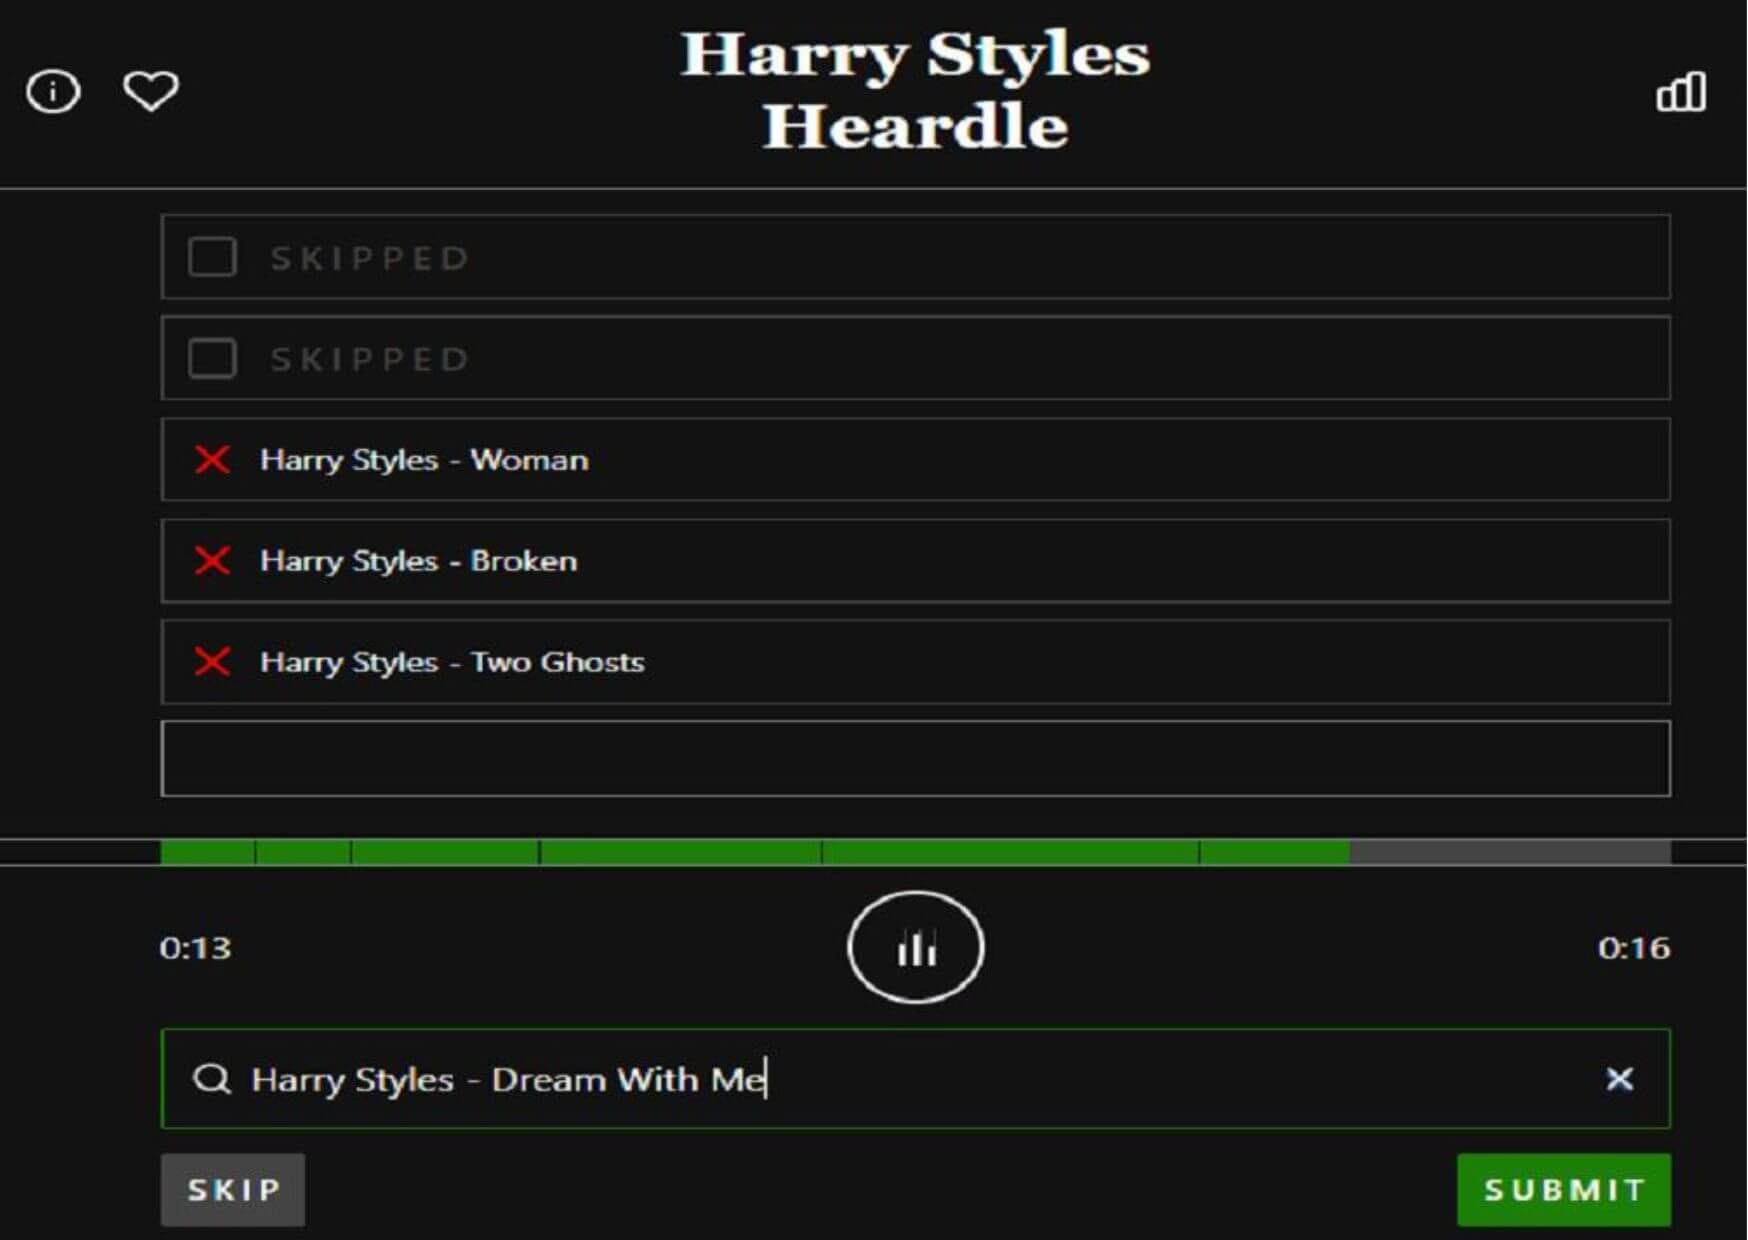 How To Play Harry Styles Heardle